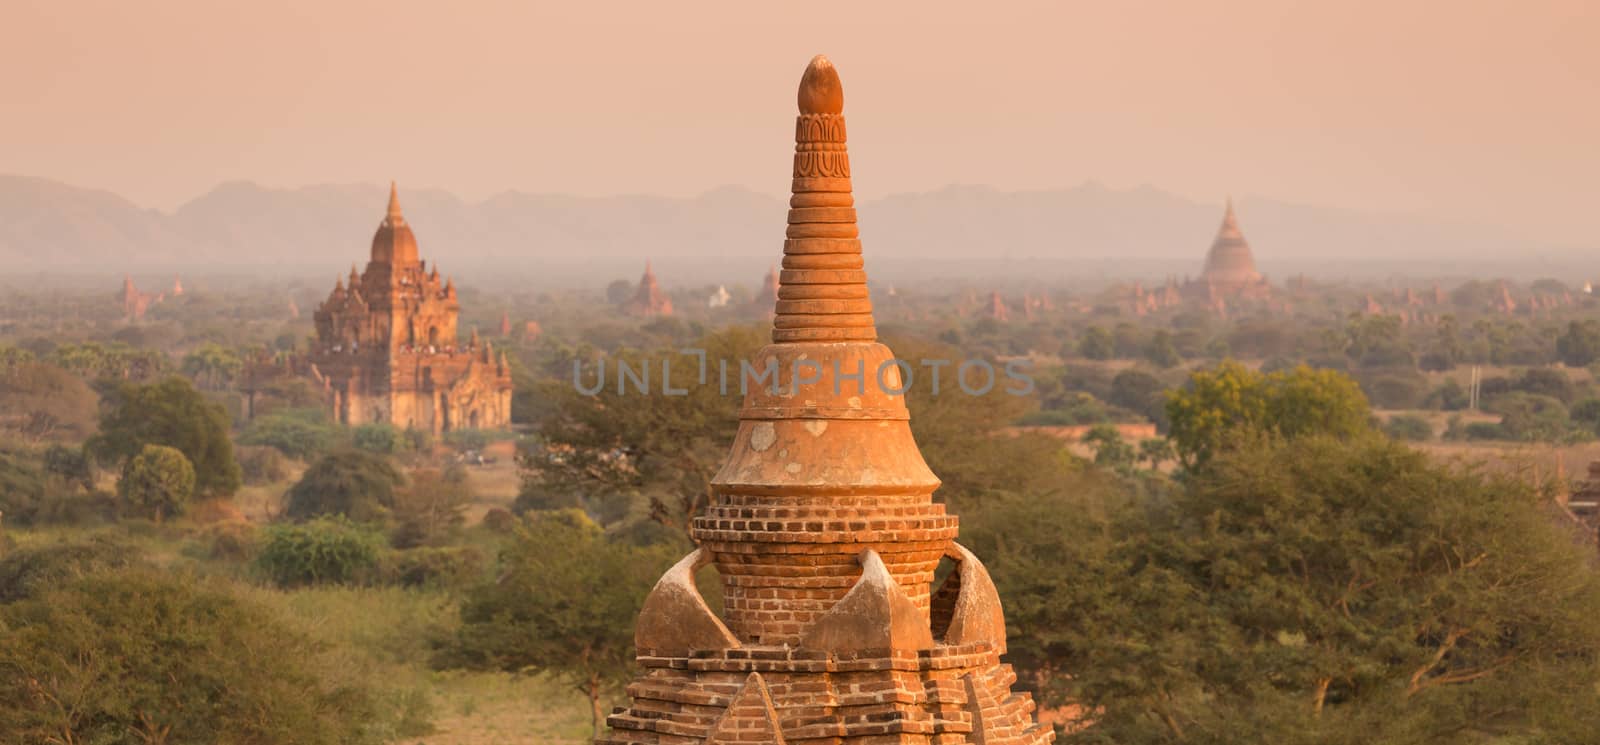 Tamples of Bagan, Burma, Myanmar, Asia. by kasto